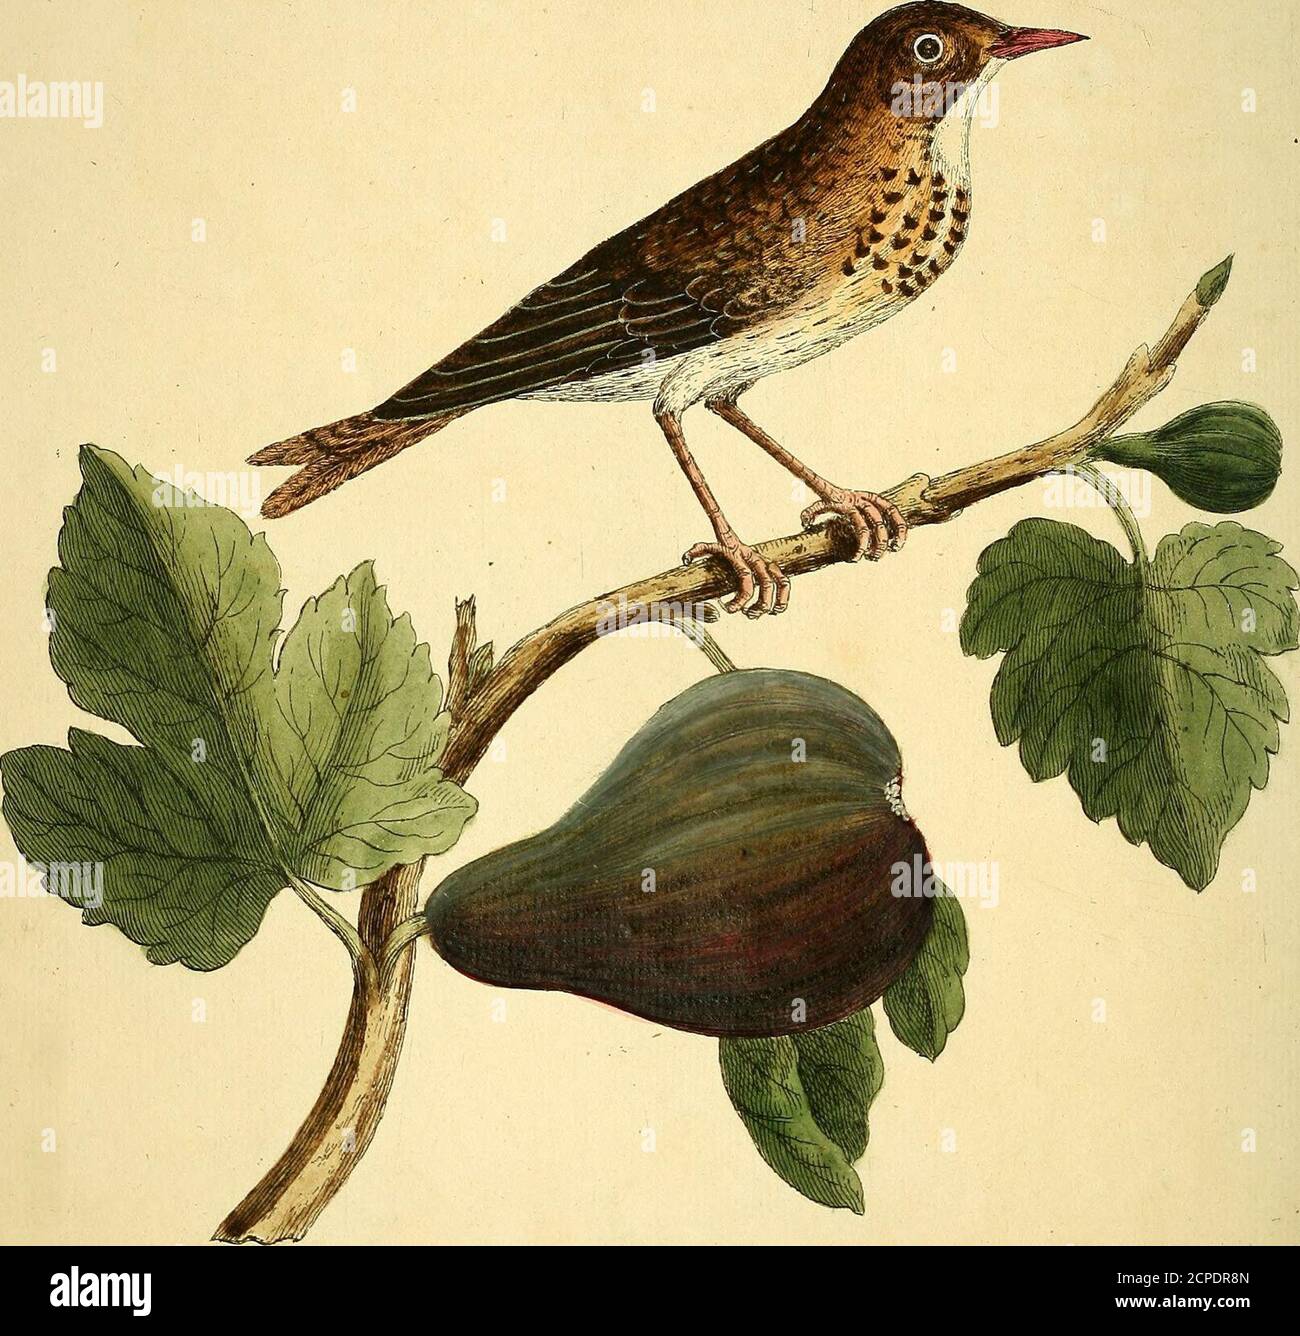 . Historia natural de las aves : ilustrado con cien placas de cobre, curiosamente grabado de la vida. ("no") Lu./e/ ZS.ZS. jj- %o... tiy-i/a/jt ca??na/t,?ia. «r,c,4v/.v v?: Slea zarAllnn. Je/i. #. JJJ. El higo-eater, Numb. XXVI. ESTE es un ave de largo cuerpo de Fmail, su cuenta (prestamista, y de la Marca roja roja color j la parte superior de la cabeza, la parte posterior y la cola de un duiky rojo, cinereous y mezcla amarilla j que tiene la fama número de plumas de alas y cola como en otras aves; El Quill y cubre más oscuro que el reft5their e Foto de stock